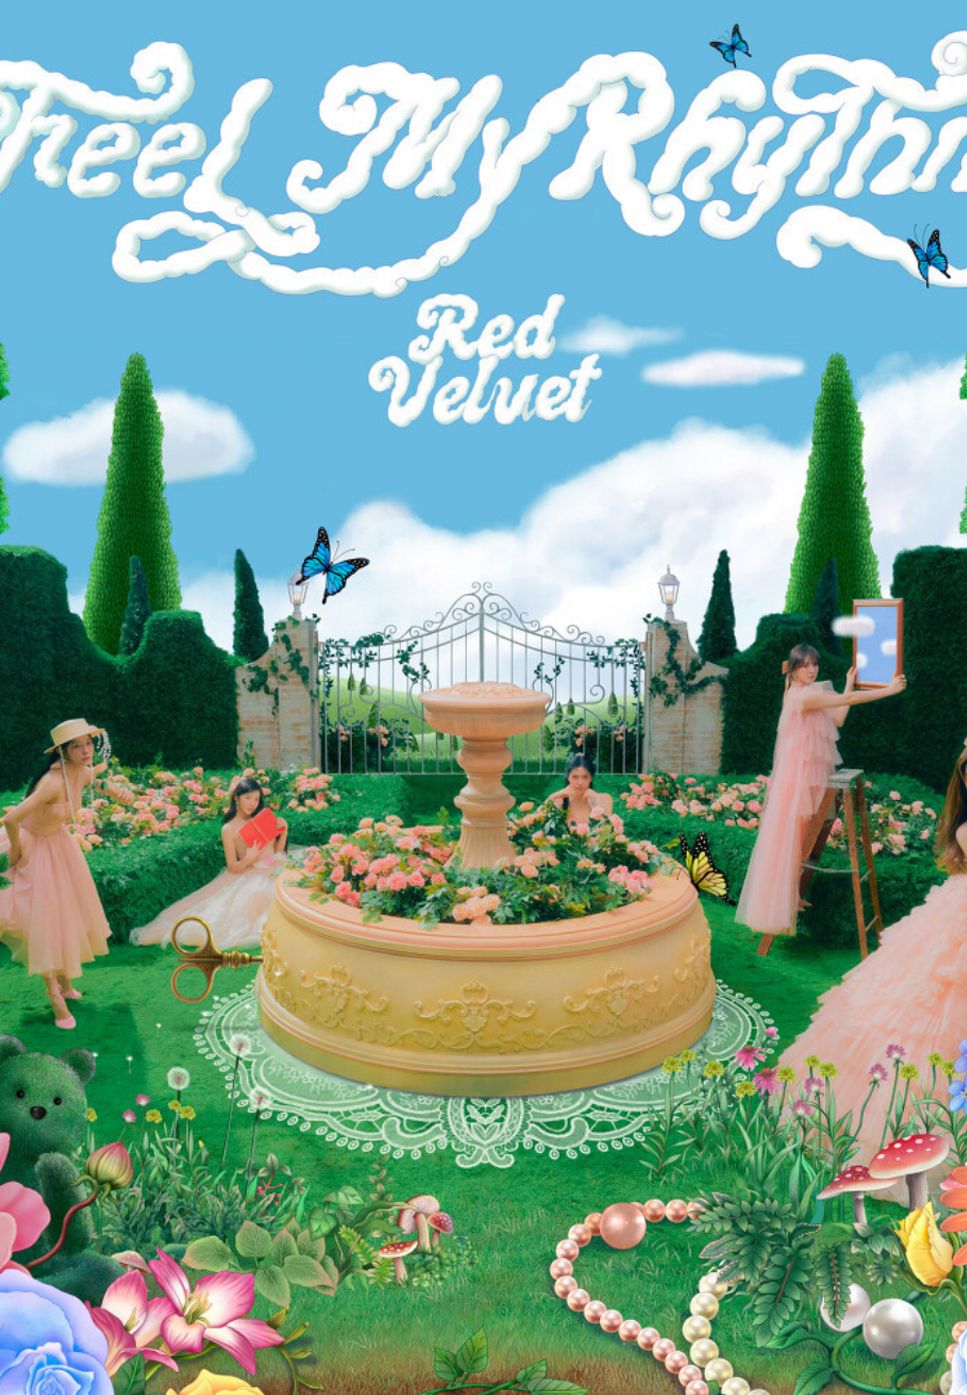 Red Velvet(레드벨벳) - Feel My Rhythm (Ckey) by PIANOSUMM